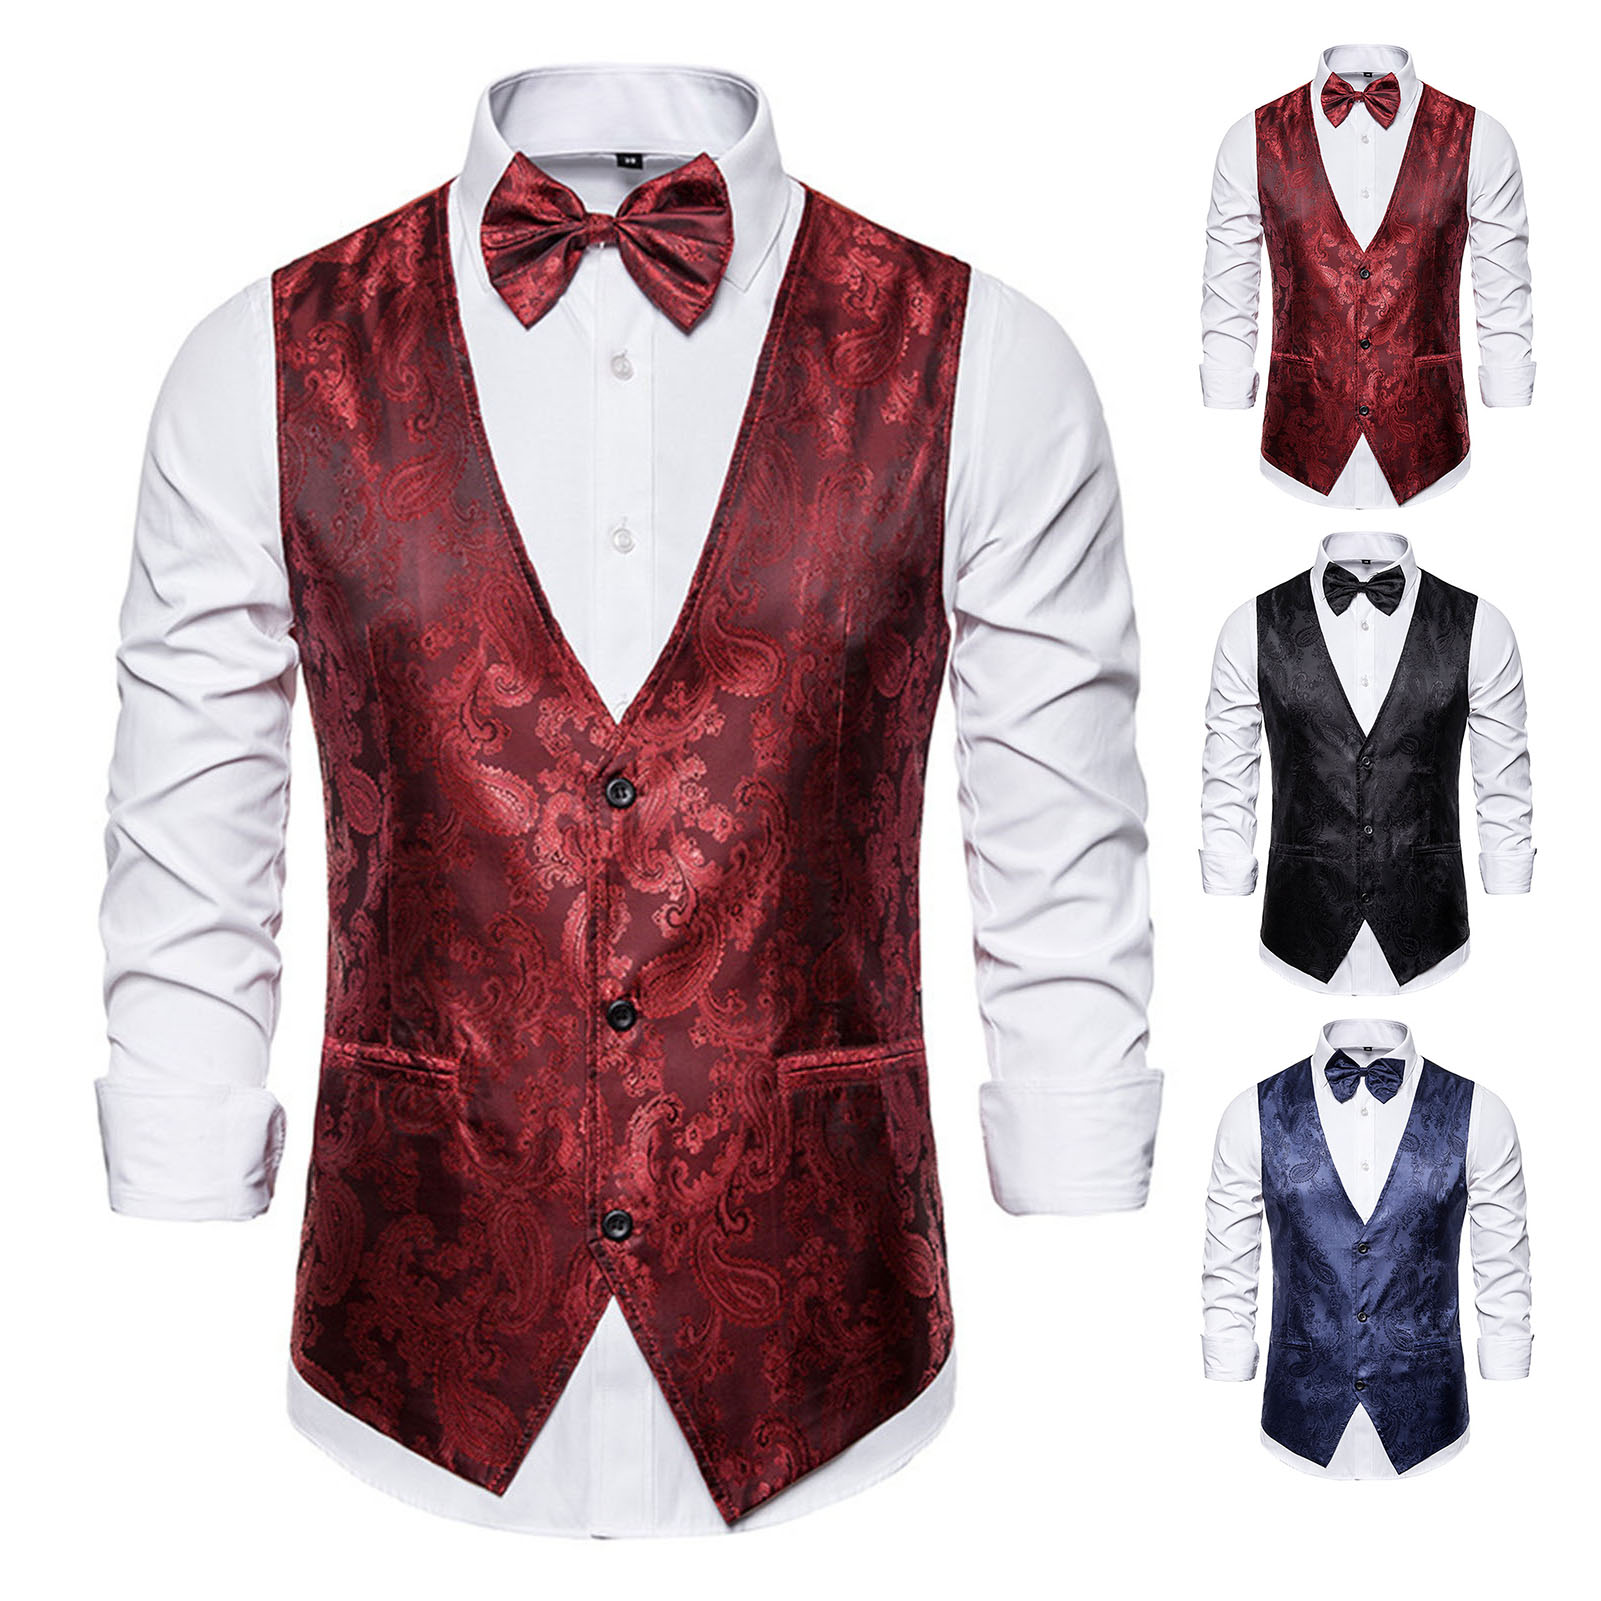 Nuoyi Men Suit Vest Formal Suit Vest Men s Vintage Print Suit Vest Perfect